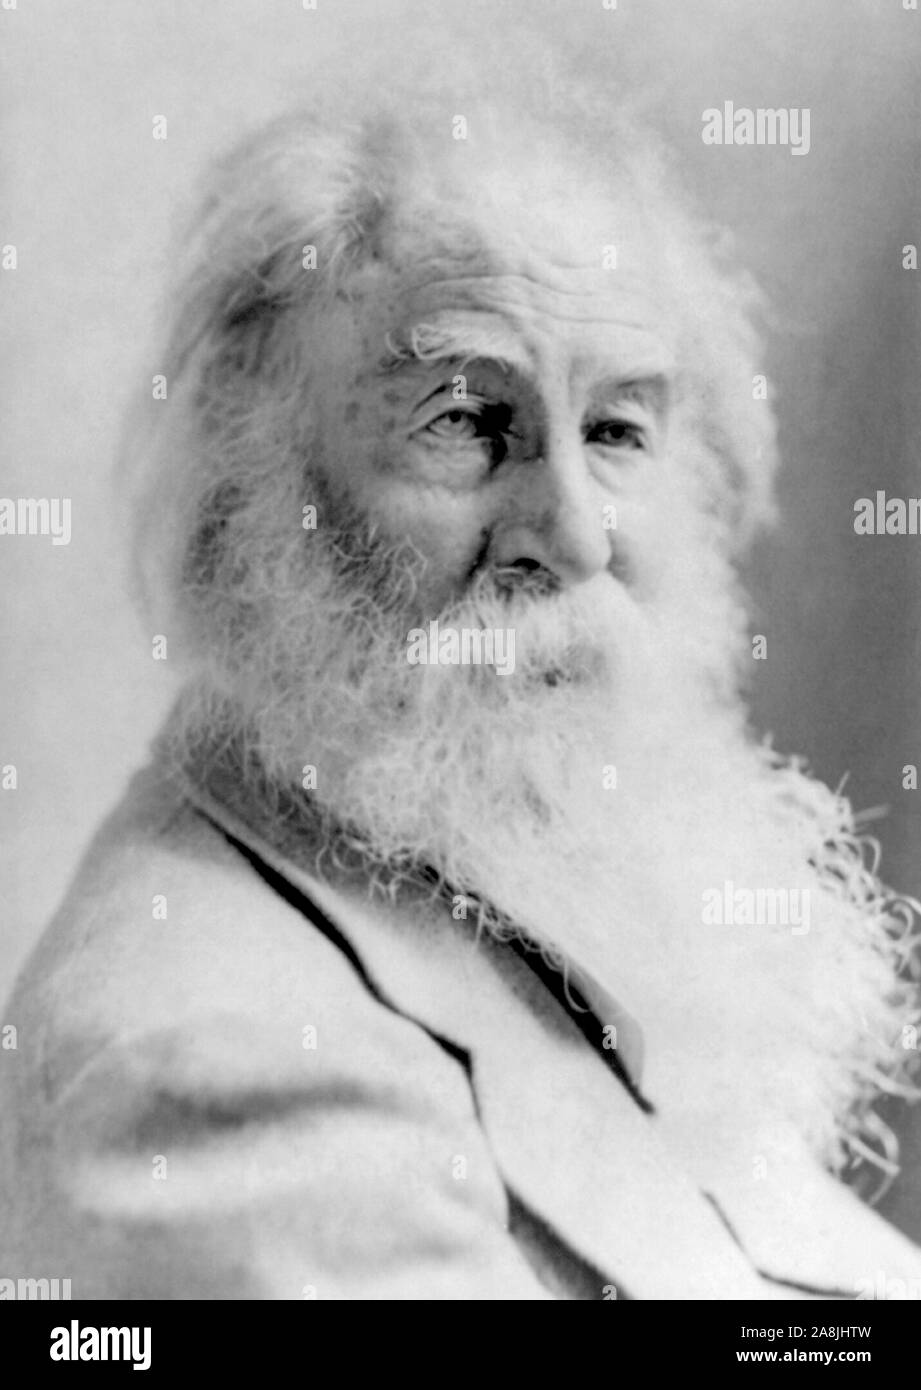 Vintage photo portrait de poète, essayiste et journaliste Walt Whitman (1819 - 1892). Photo vers 1885 par Napoléon Sarony. Banque D'Images